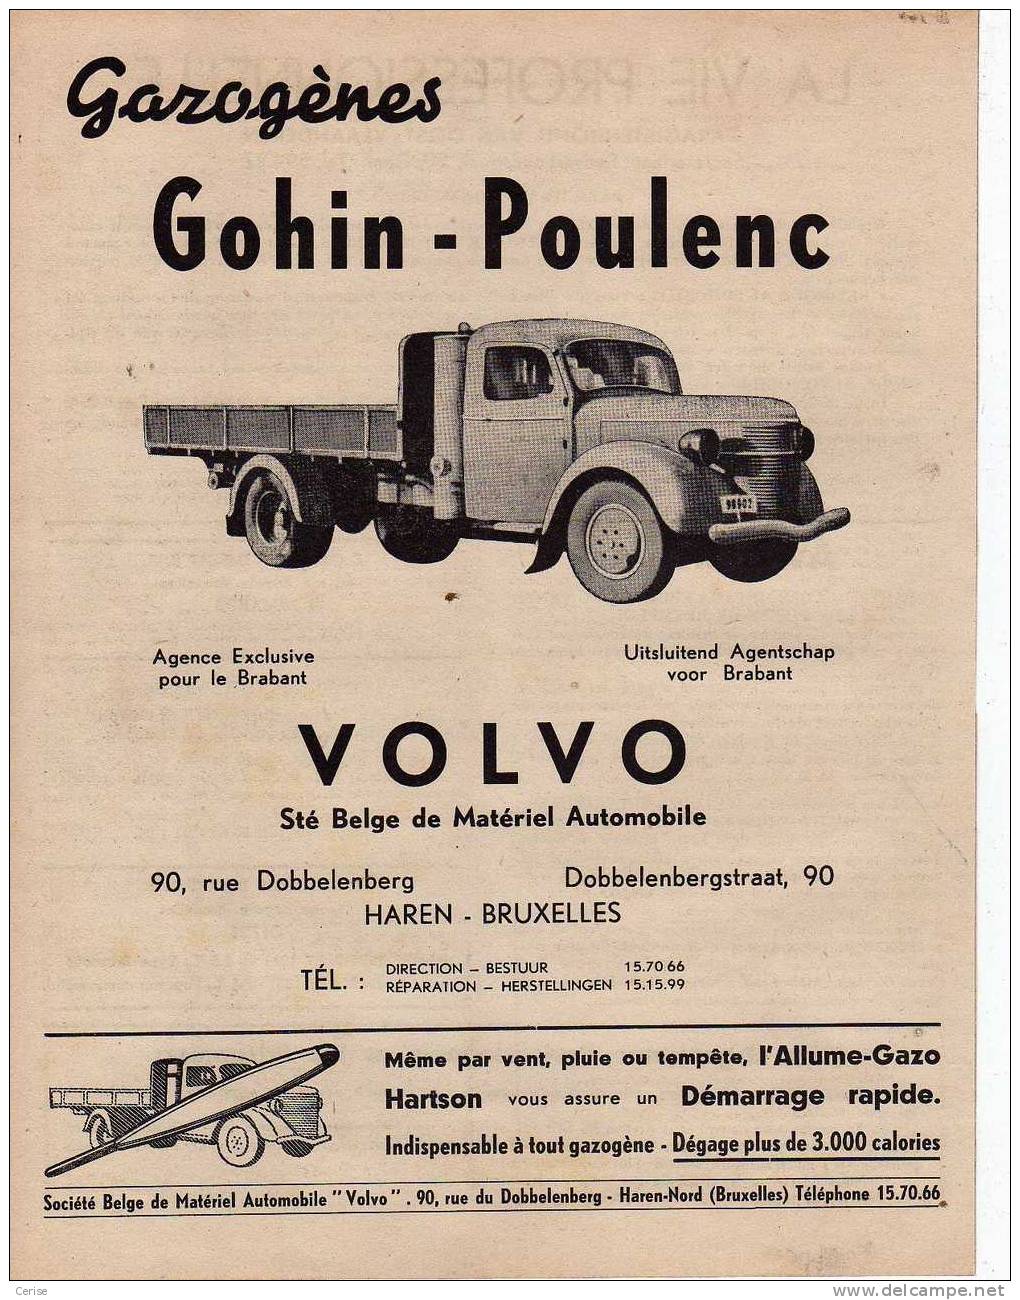 Gazogènes GOHIN-POULENC - Haren - Bruxelles - Publicités